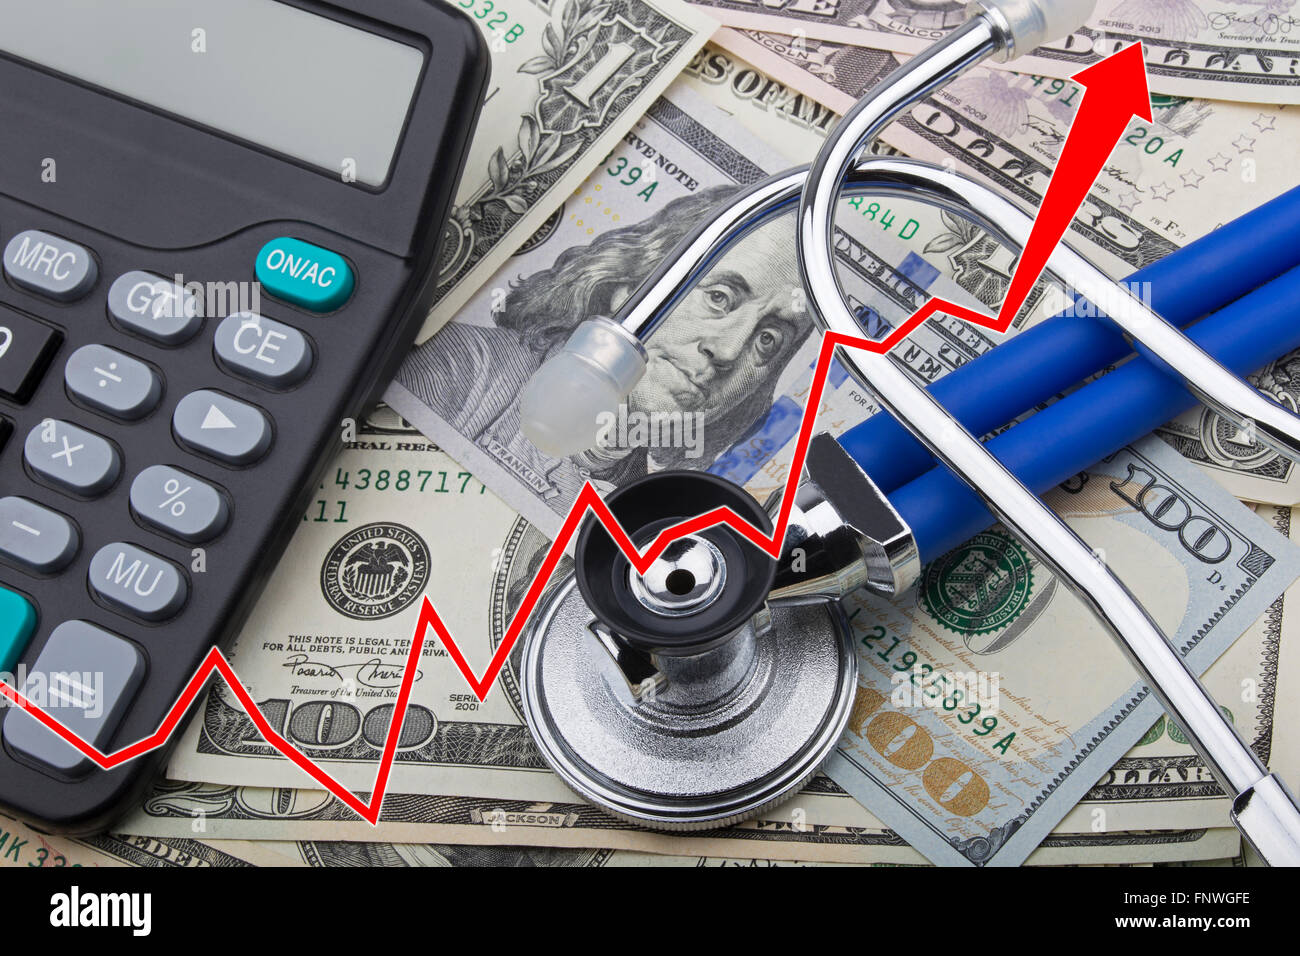 Gráfico que muestra el alto costo del cuidado de salud con USD billetes de banco de un estetoscopio y calculadora Foto de stock